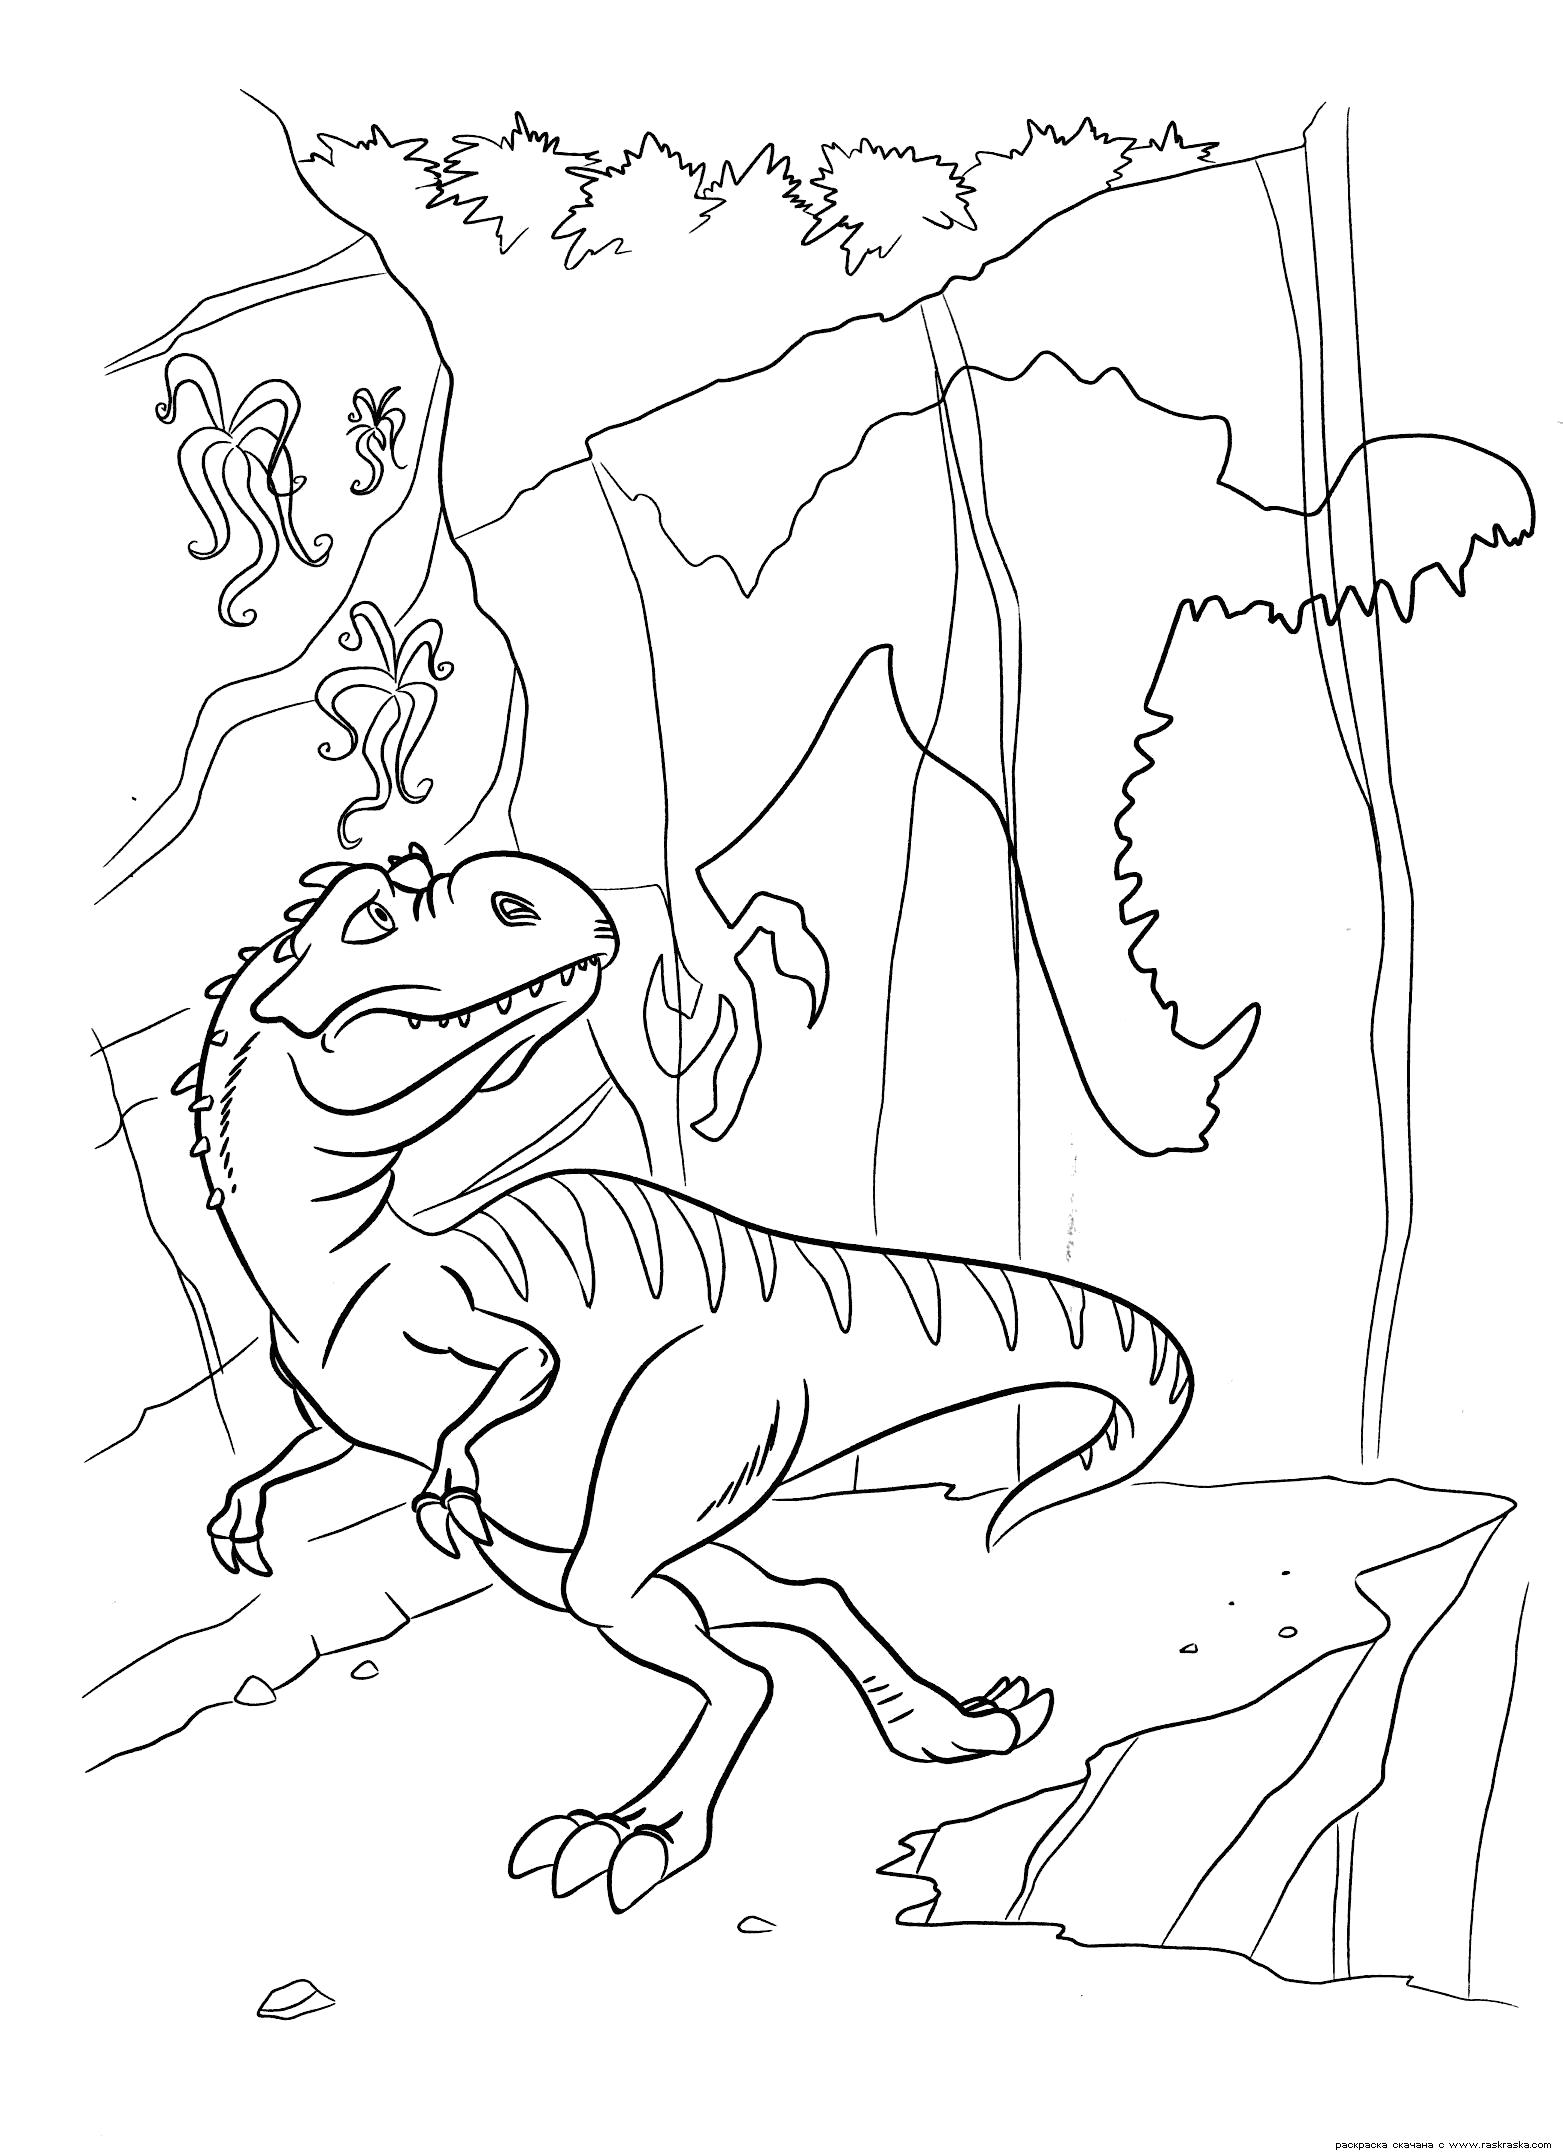 Раскраска Раскраска Тень Руди. Раскраска Мама динозавриков боится за своих малышей. Раскраска динозавра из мультфильма Ледниковый период 3. динозавр